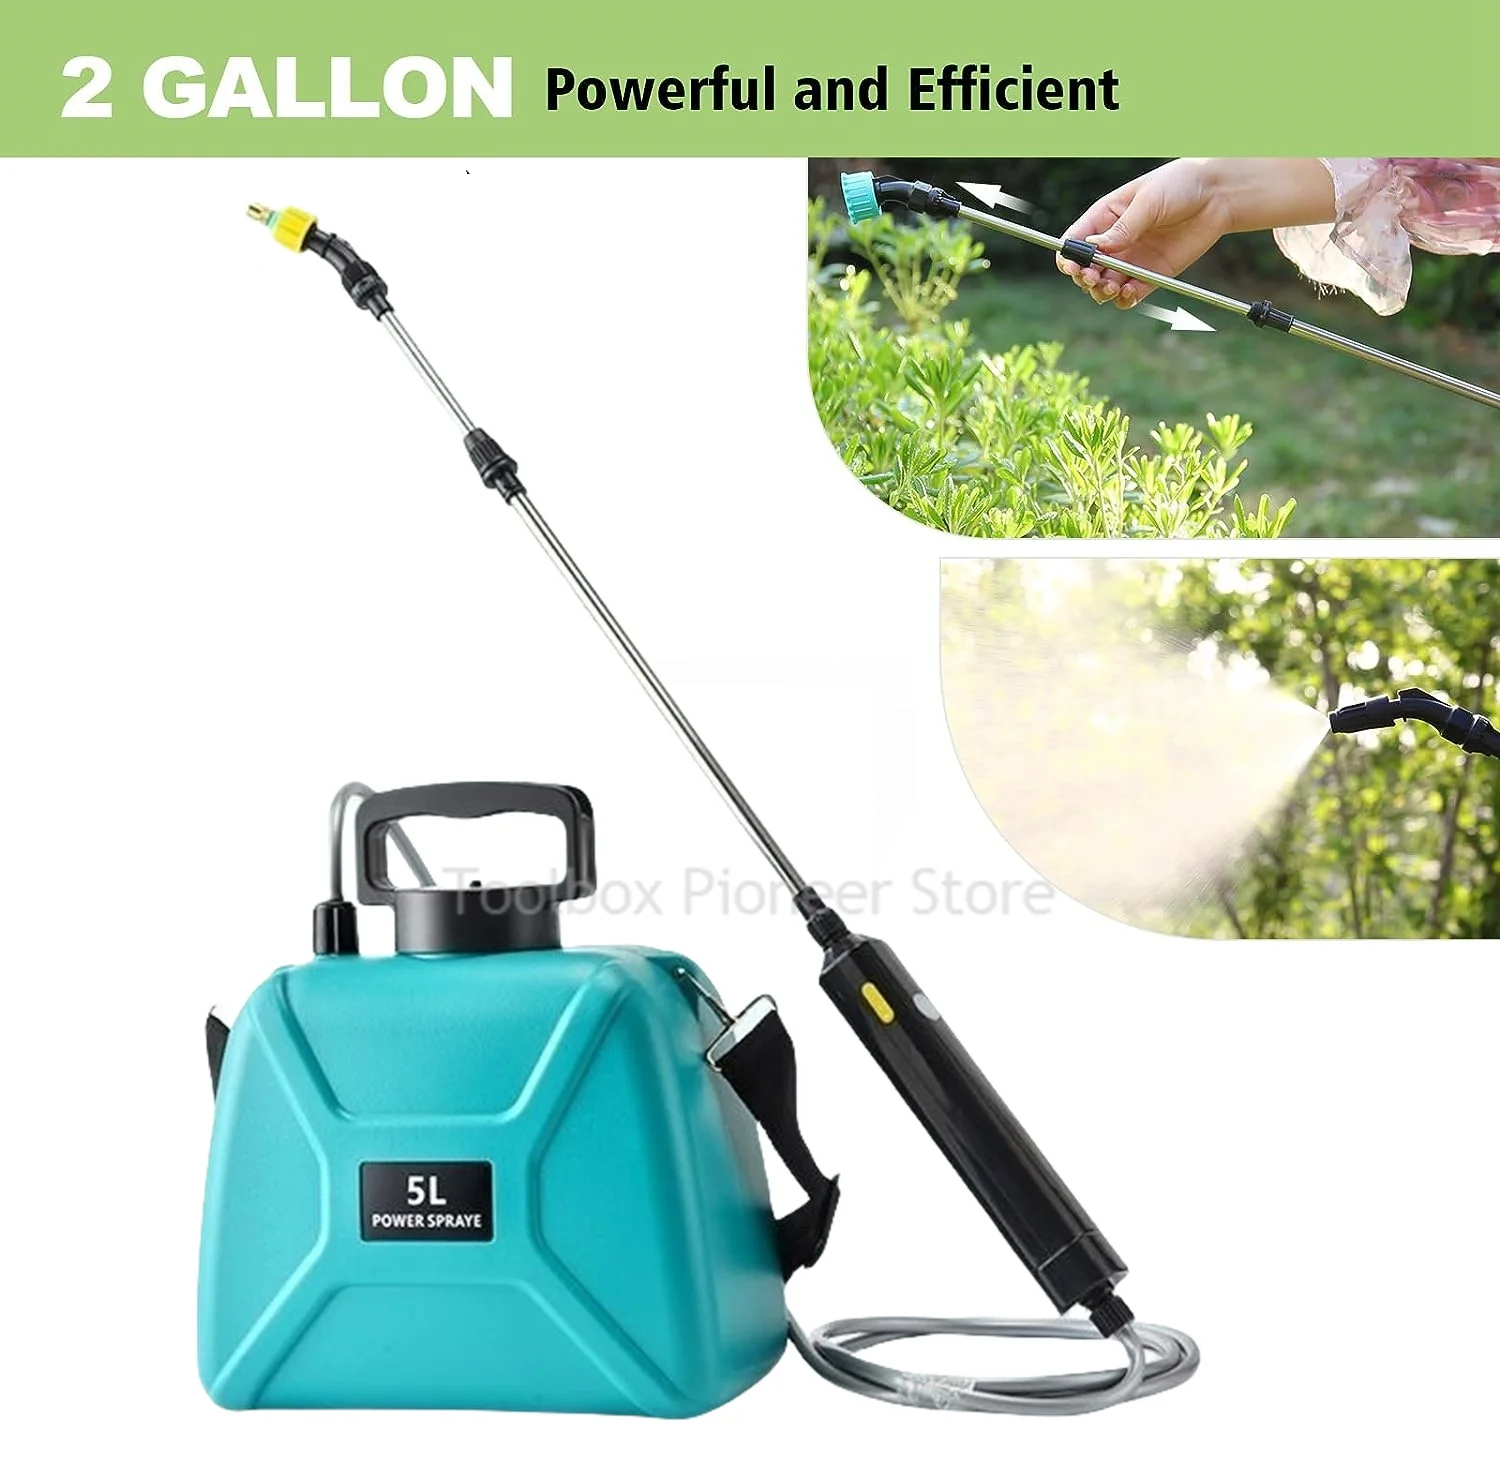 

Электрический распылитель для сада, автоматический распылитель, сельскохозяйственный прибор для полива, с аккумулятором 5 л